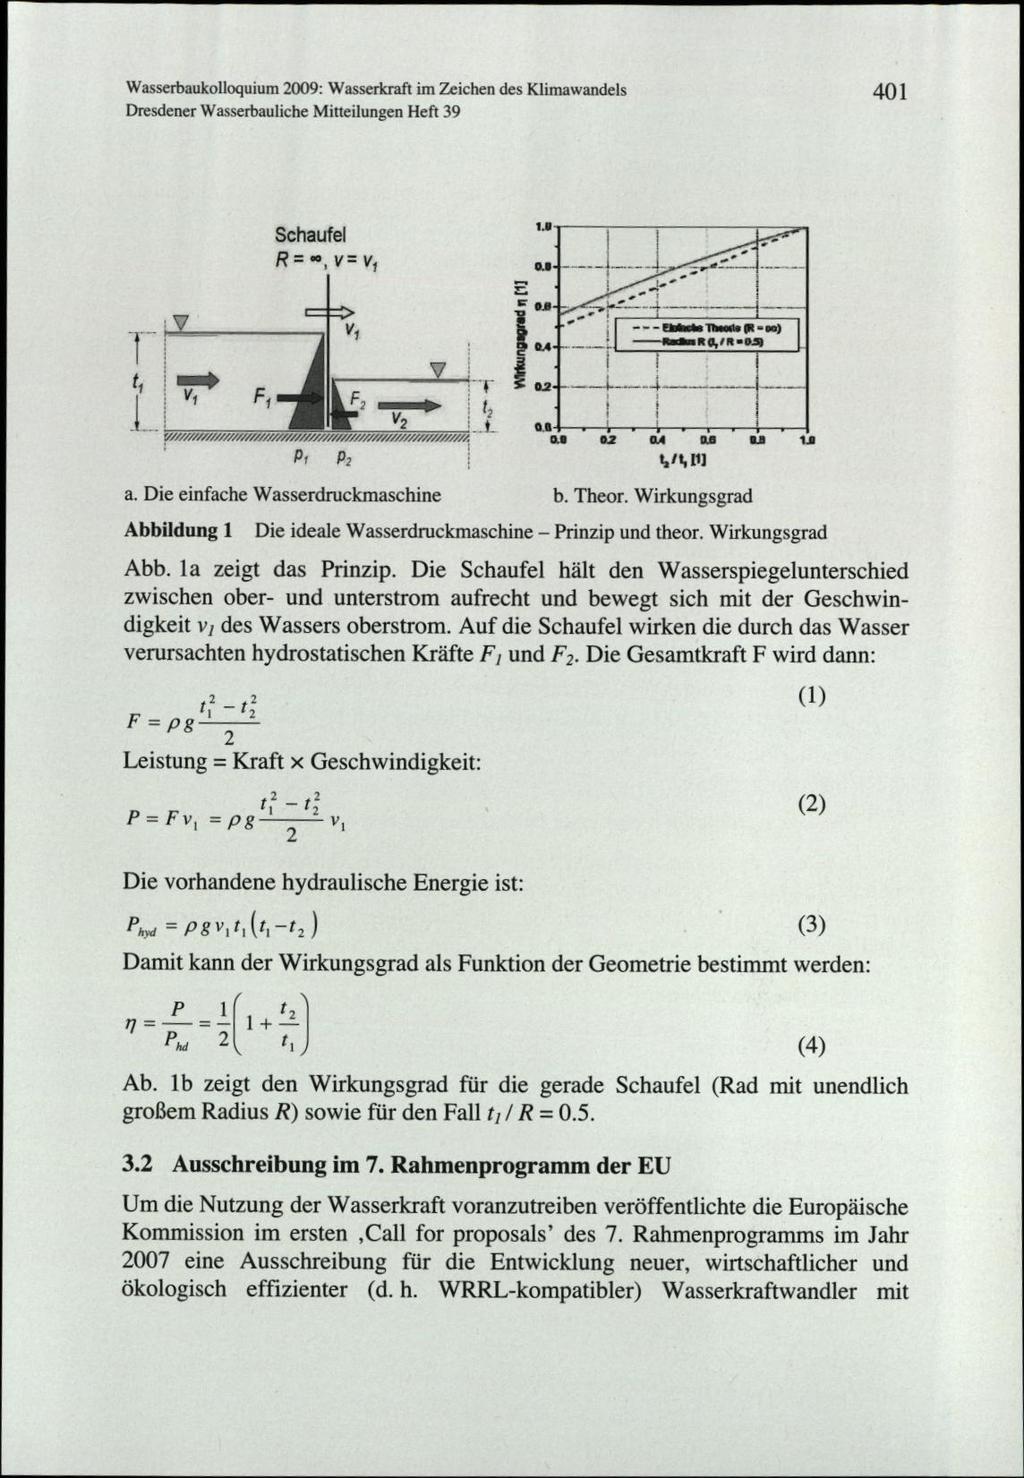 Wasserbaukoloquium 2009: Wasserkraft im Zeichen des Klimawandels Dresdener Wasserbauliche Mitteilungen Heft 39 401 r 4 1 tv * v, Fi7 Schaufel R = =,v=v, 4 V, V 6 'r 'F i 6 E 1'. a,. iu 2 a4. 2 1; 02.